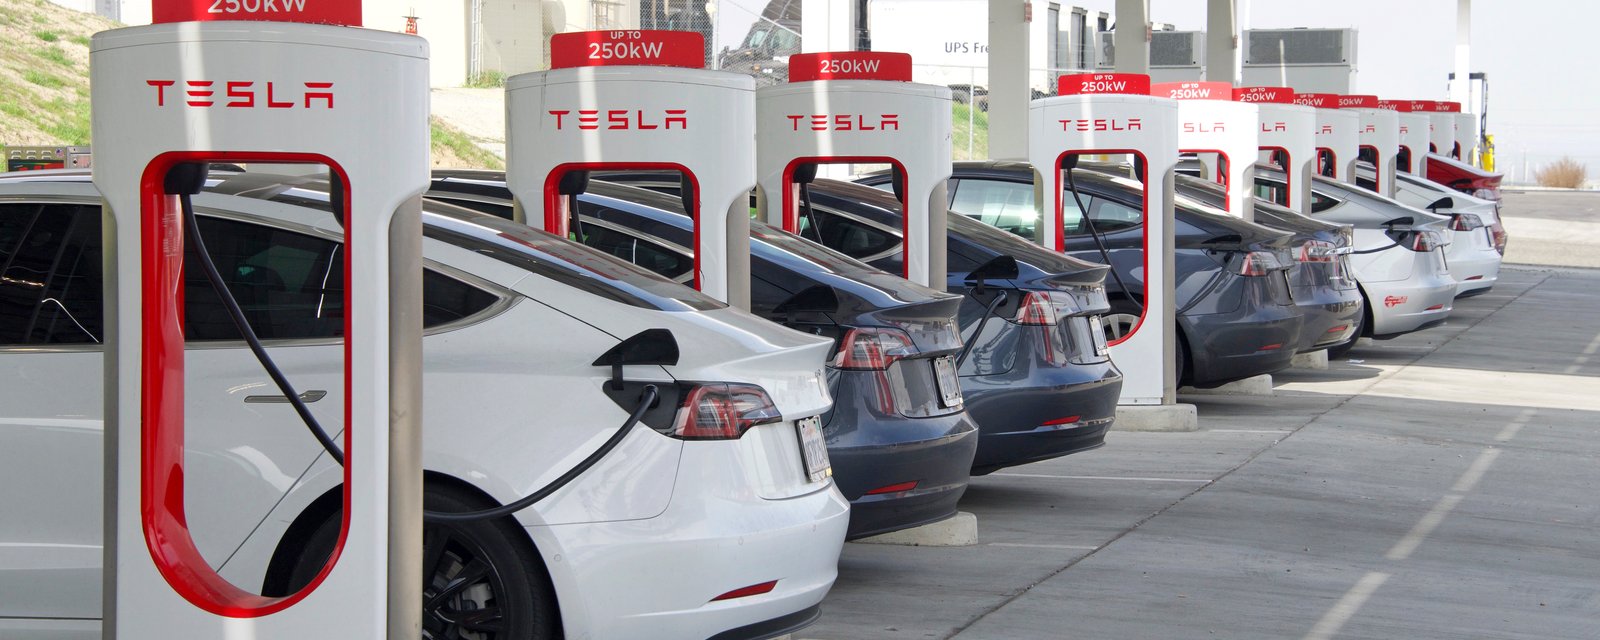 Une récente étude confirme que les véhicules électriques font baisser les émissions de CO2 